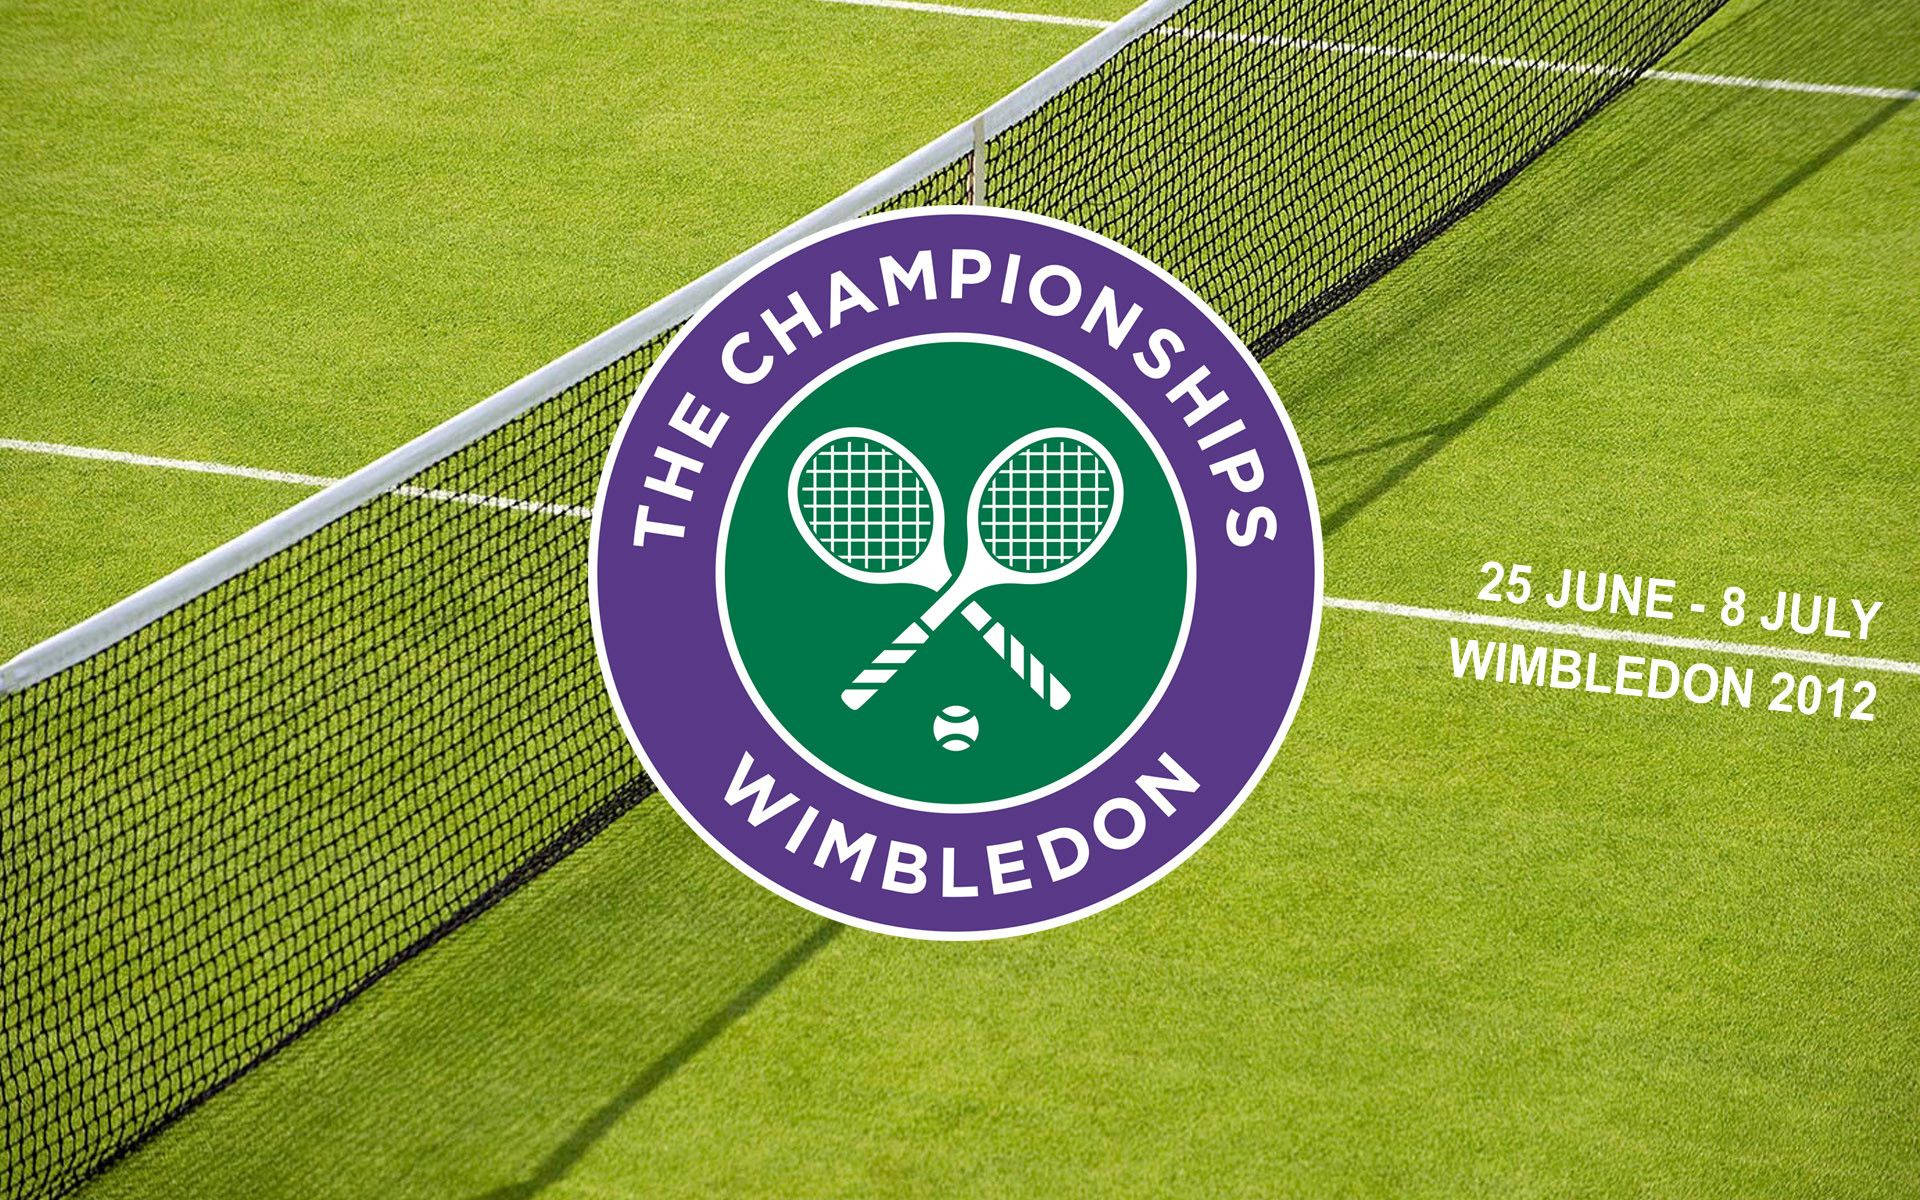 Wimbledonlogotypen På Gräs. Wallpaper